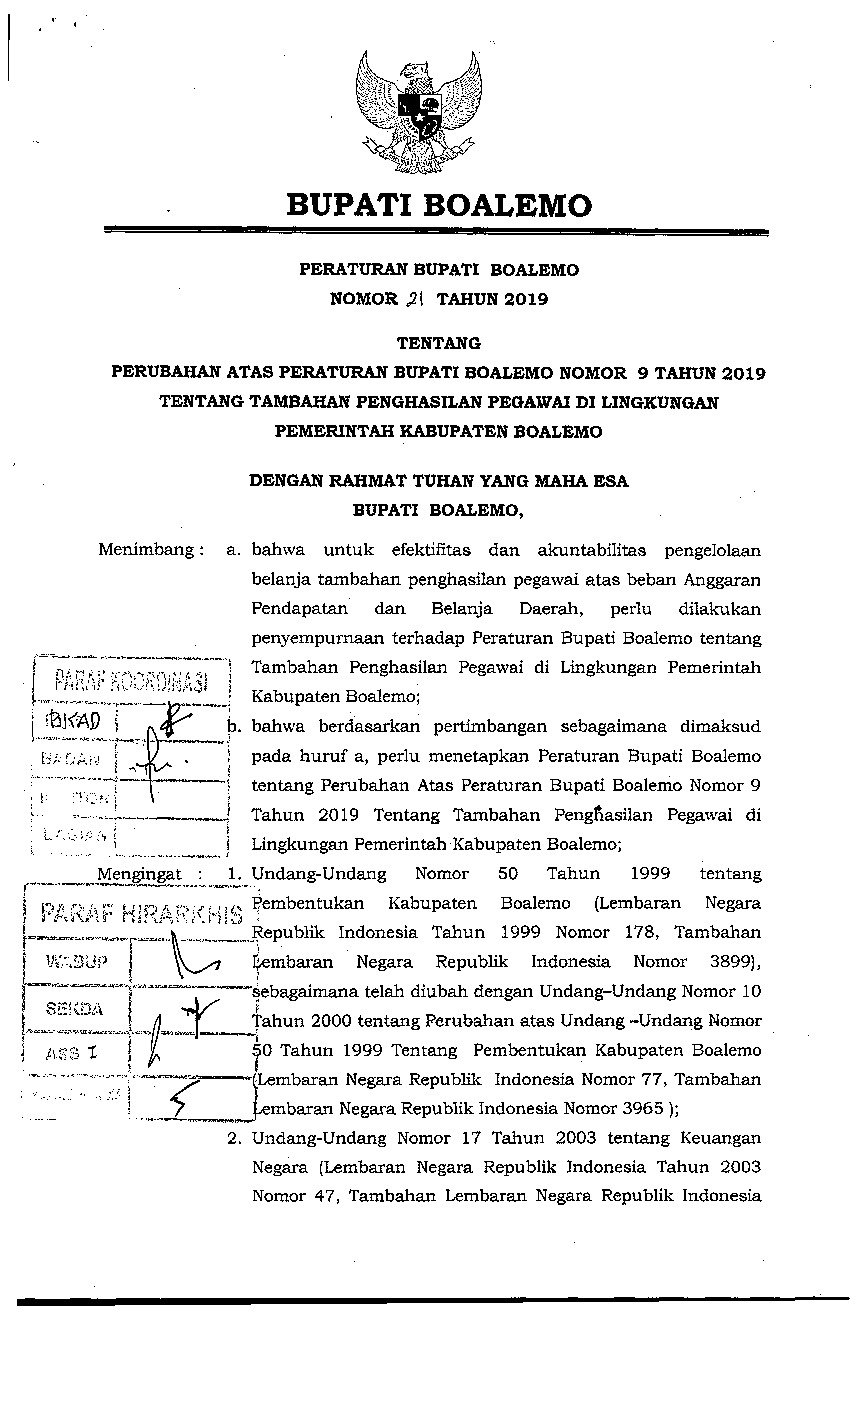 Peraturan Bupati Boalemo No 21 tahun 2019 tentang Perubahan Atas Peraturan Bupati Boalemo Nomor 9 Tahun 2019 Tentang Tambahan Penghasilan Pegawai di Lingkungan Pemerintah Kabupaten Boalemo